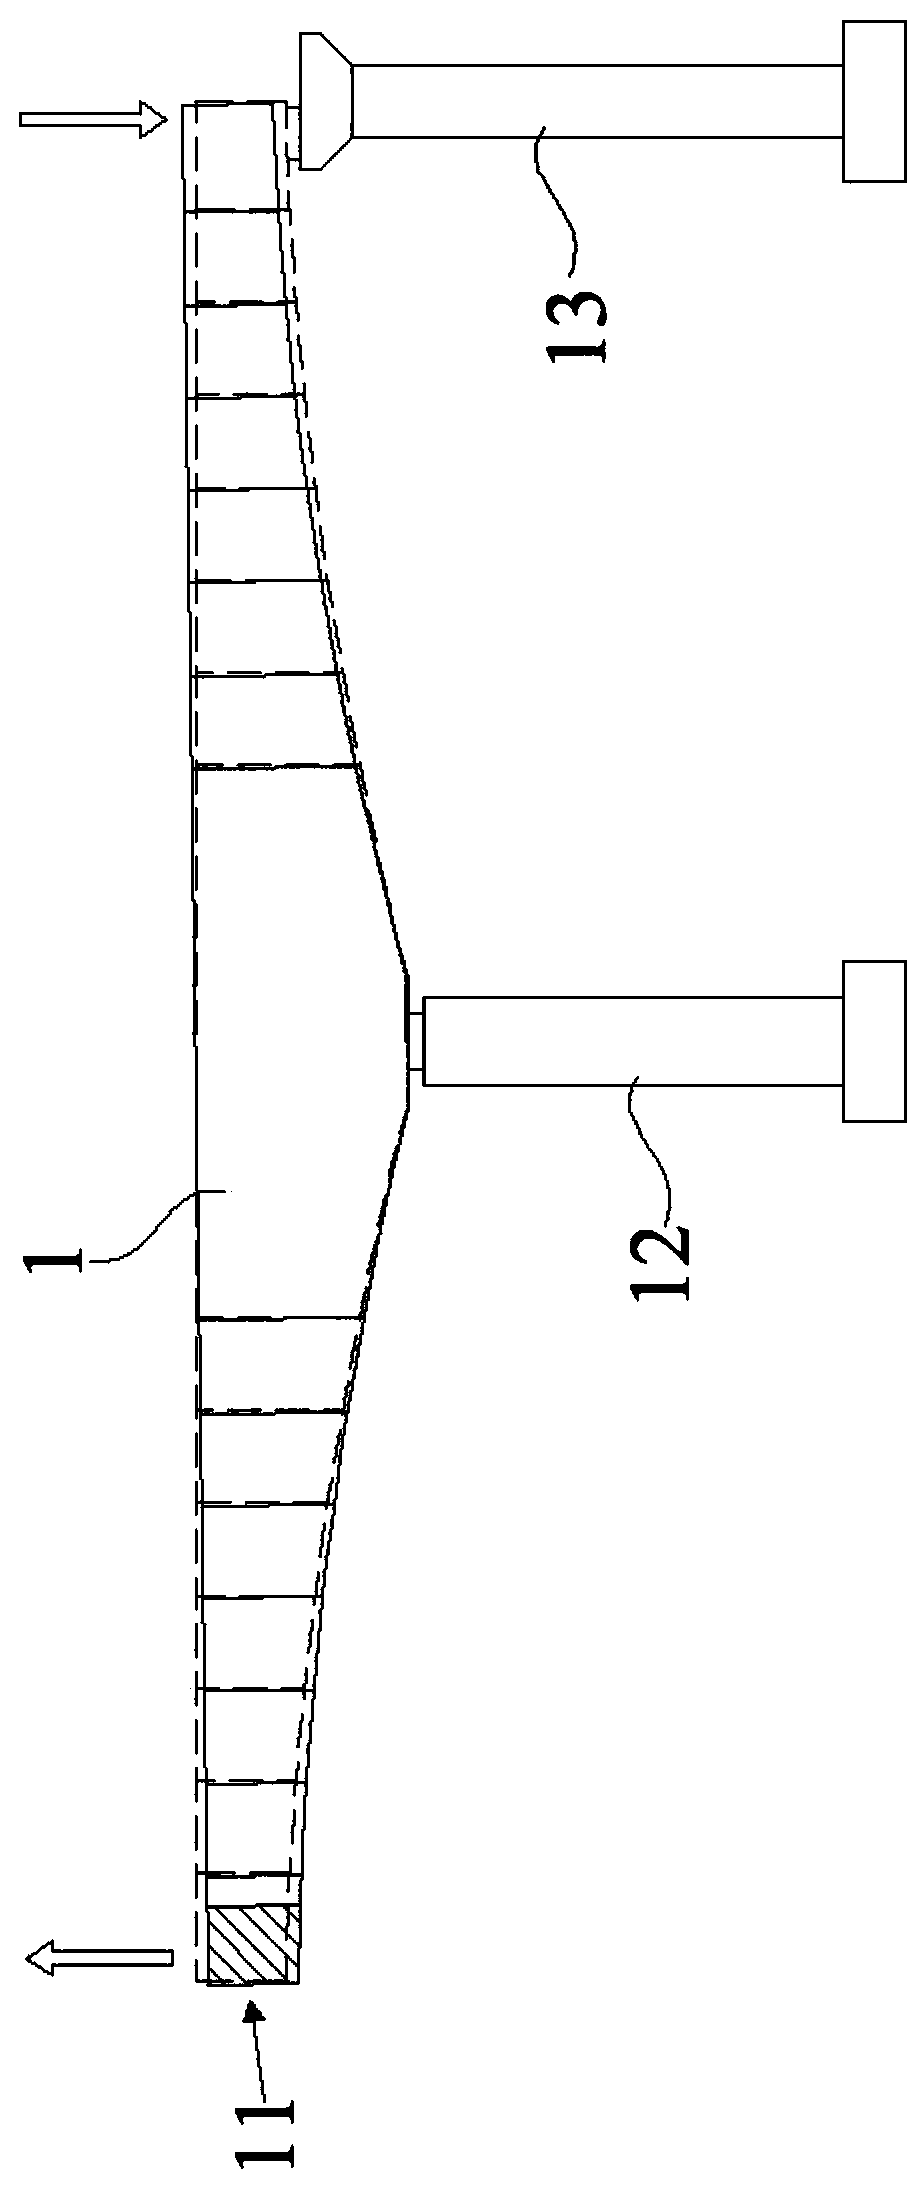 Bridge Deck Elevation Adjustment Method